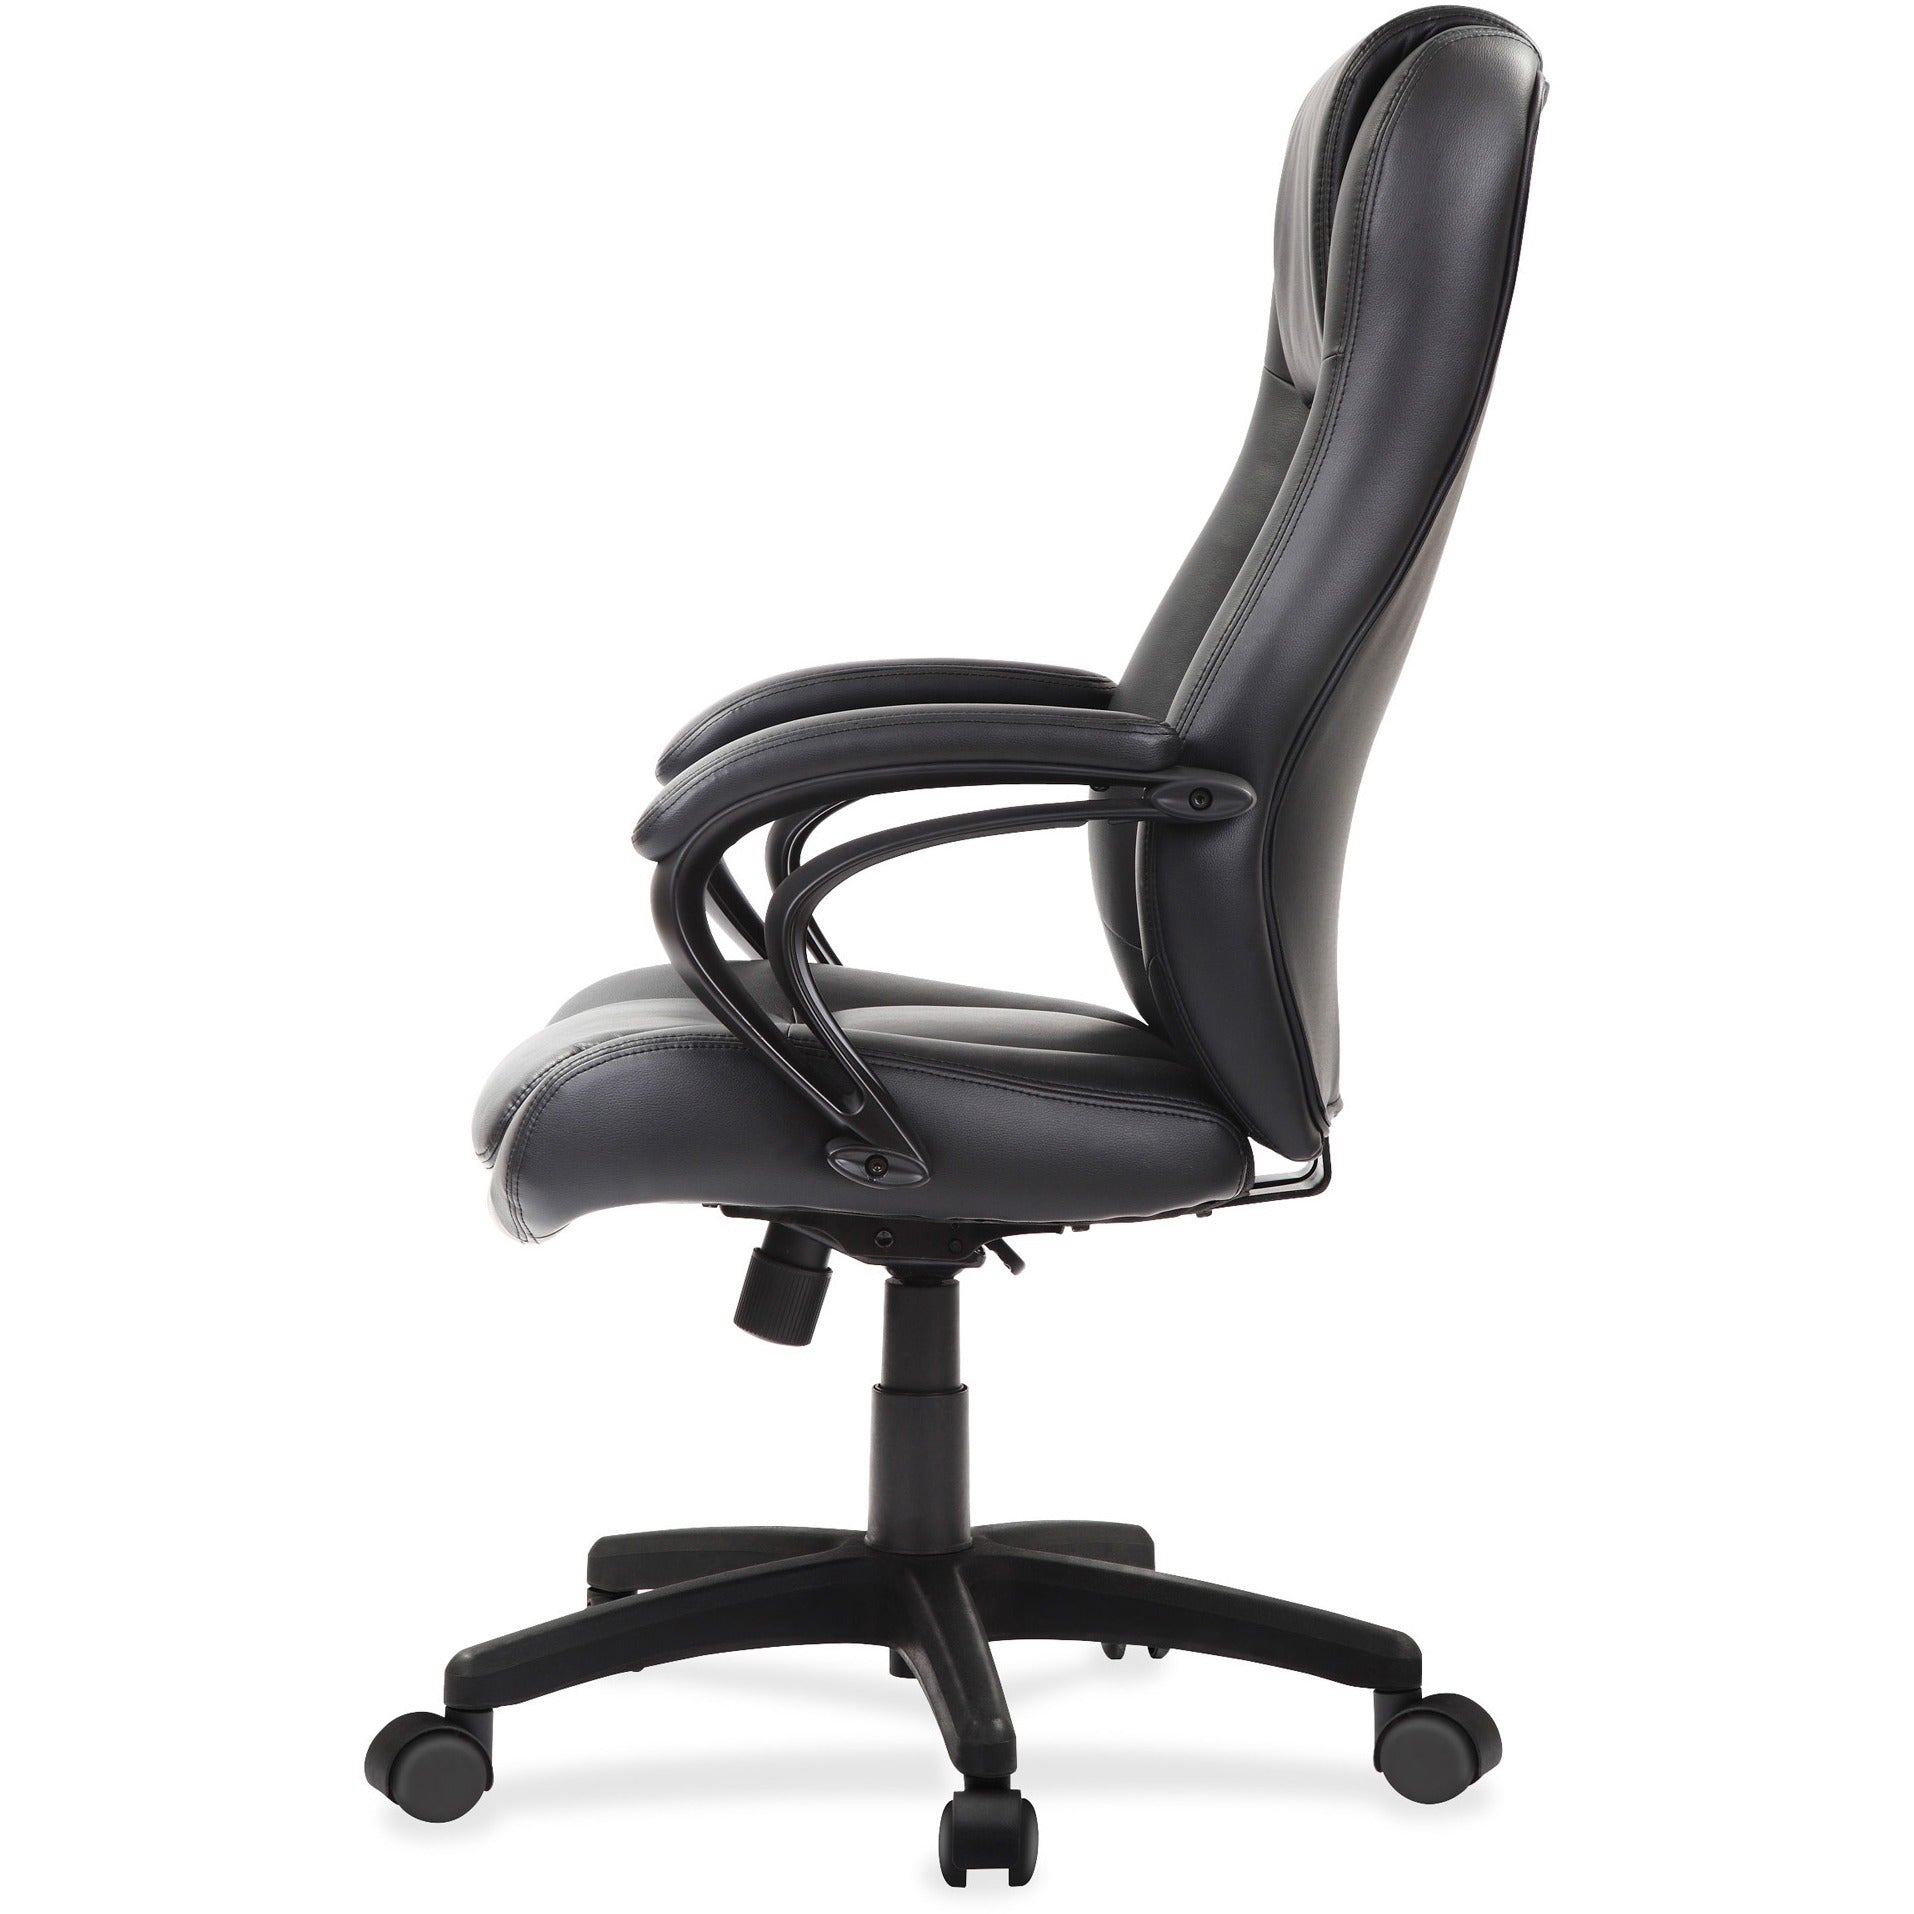 eurotech-pembroke-mid-back-executive-chair-black-bonded-leather-seat-black-bonded-leather-back-high-back-5-star-base-1-each_eutle521 - 3